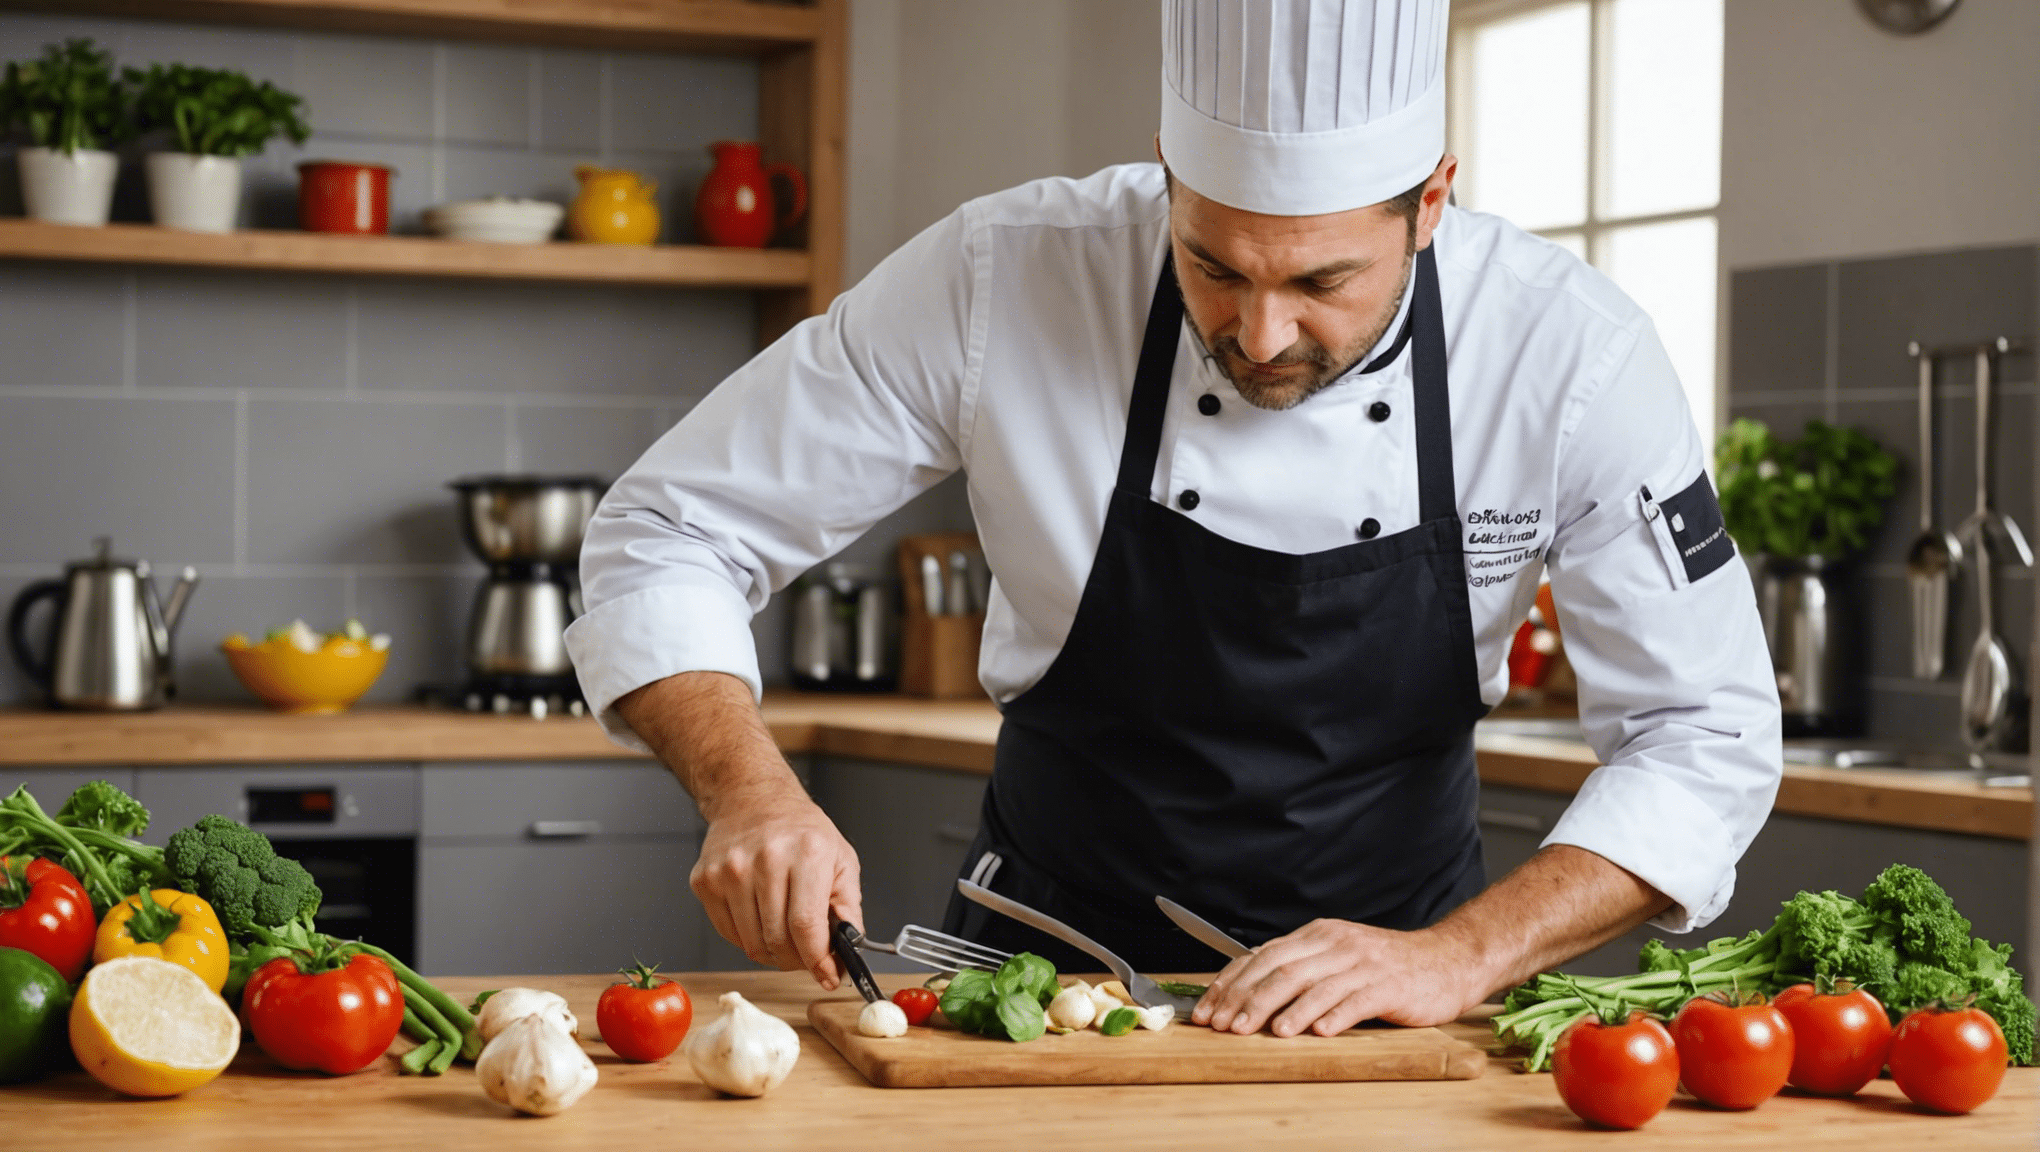 découvrez comment les chefs professionnels gardent jalousement leurs meilleures astuces de cuisine pour les appliquer à la maison. des secrets révélés pour améliorer votre art culinaire !